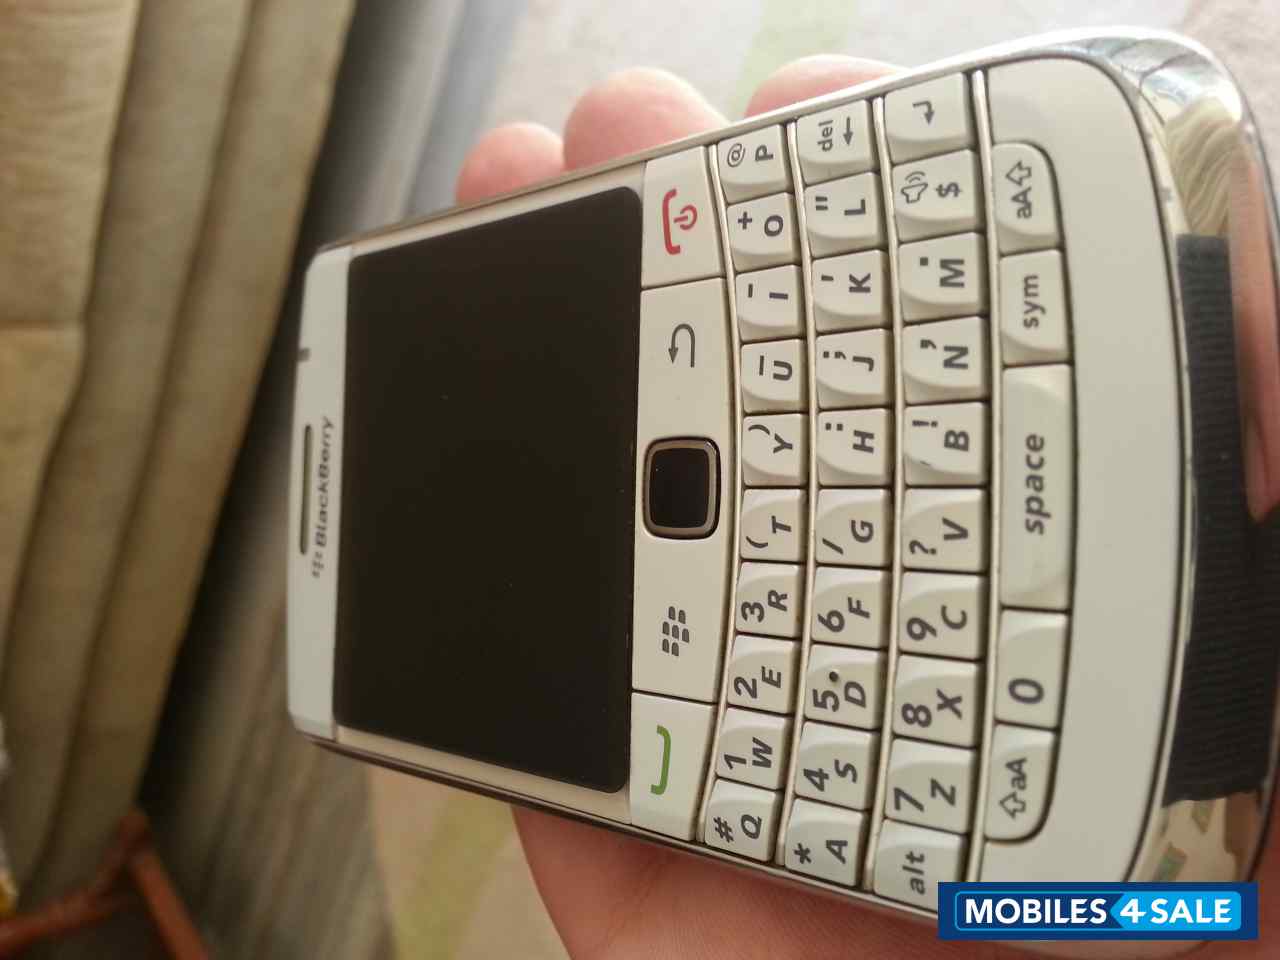 White BlackBerry Bold 9780